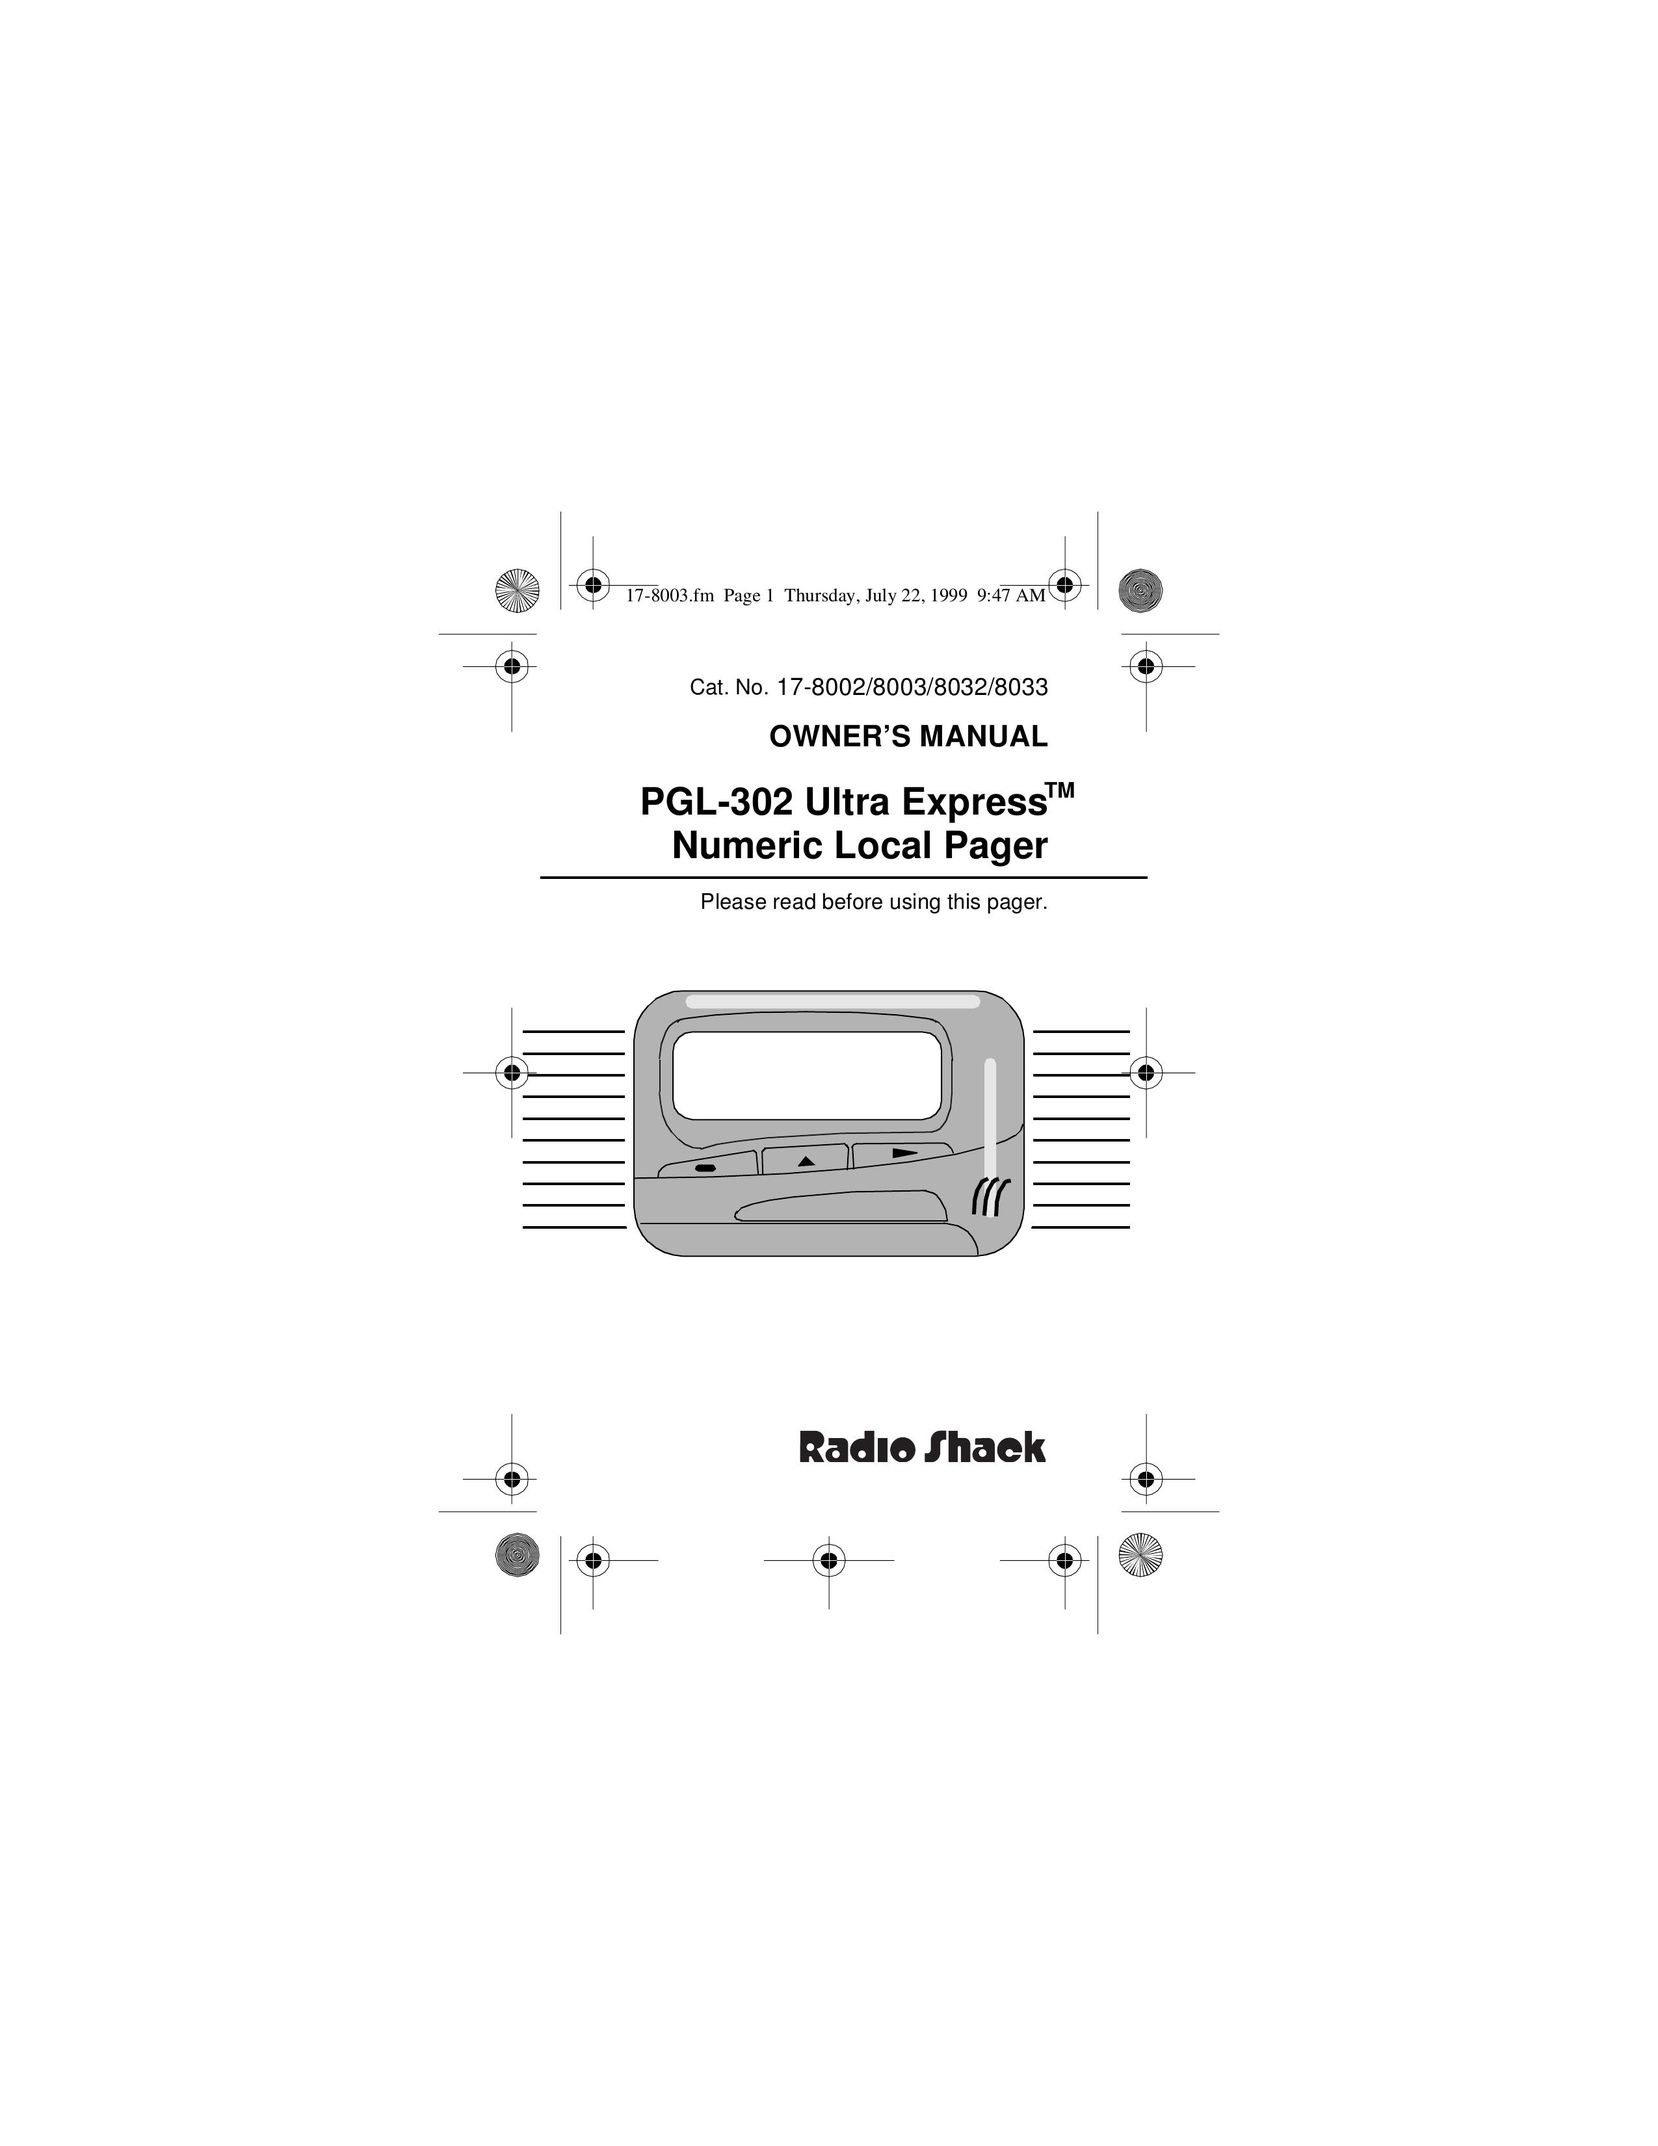 Radio Shack PGL-302 Pager User Manual